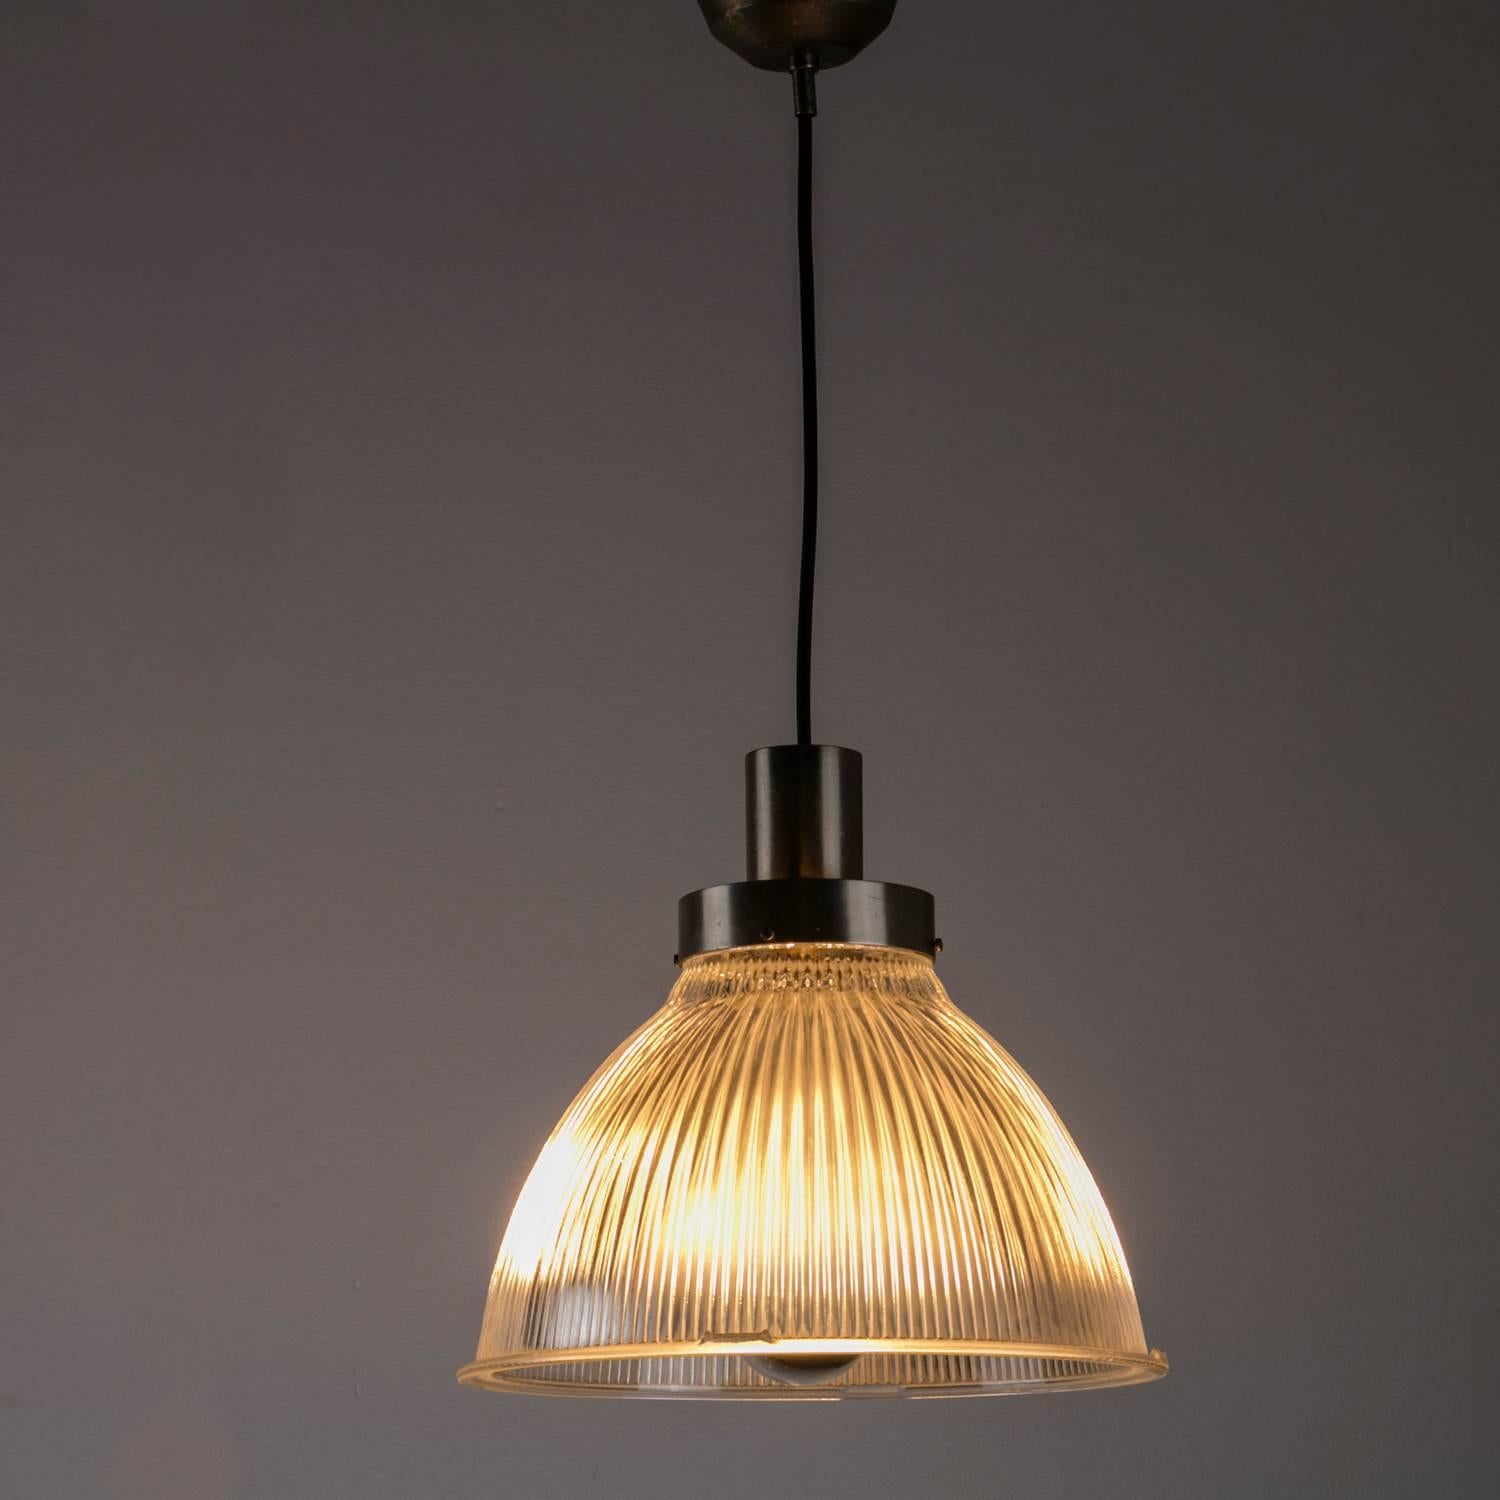 Remarquable ensemble de deux lampes suspendues italiennes des années 1950.
Avec leur cadre nickelé et leur abat-jour en verre industriel pressé, les pièces ont des liens étroits avec les lampes BBPR conçues pour Artemide.